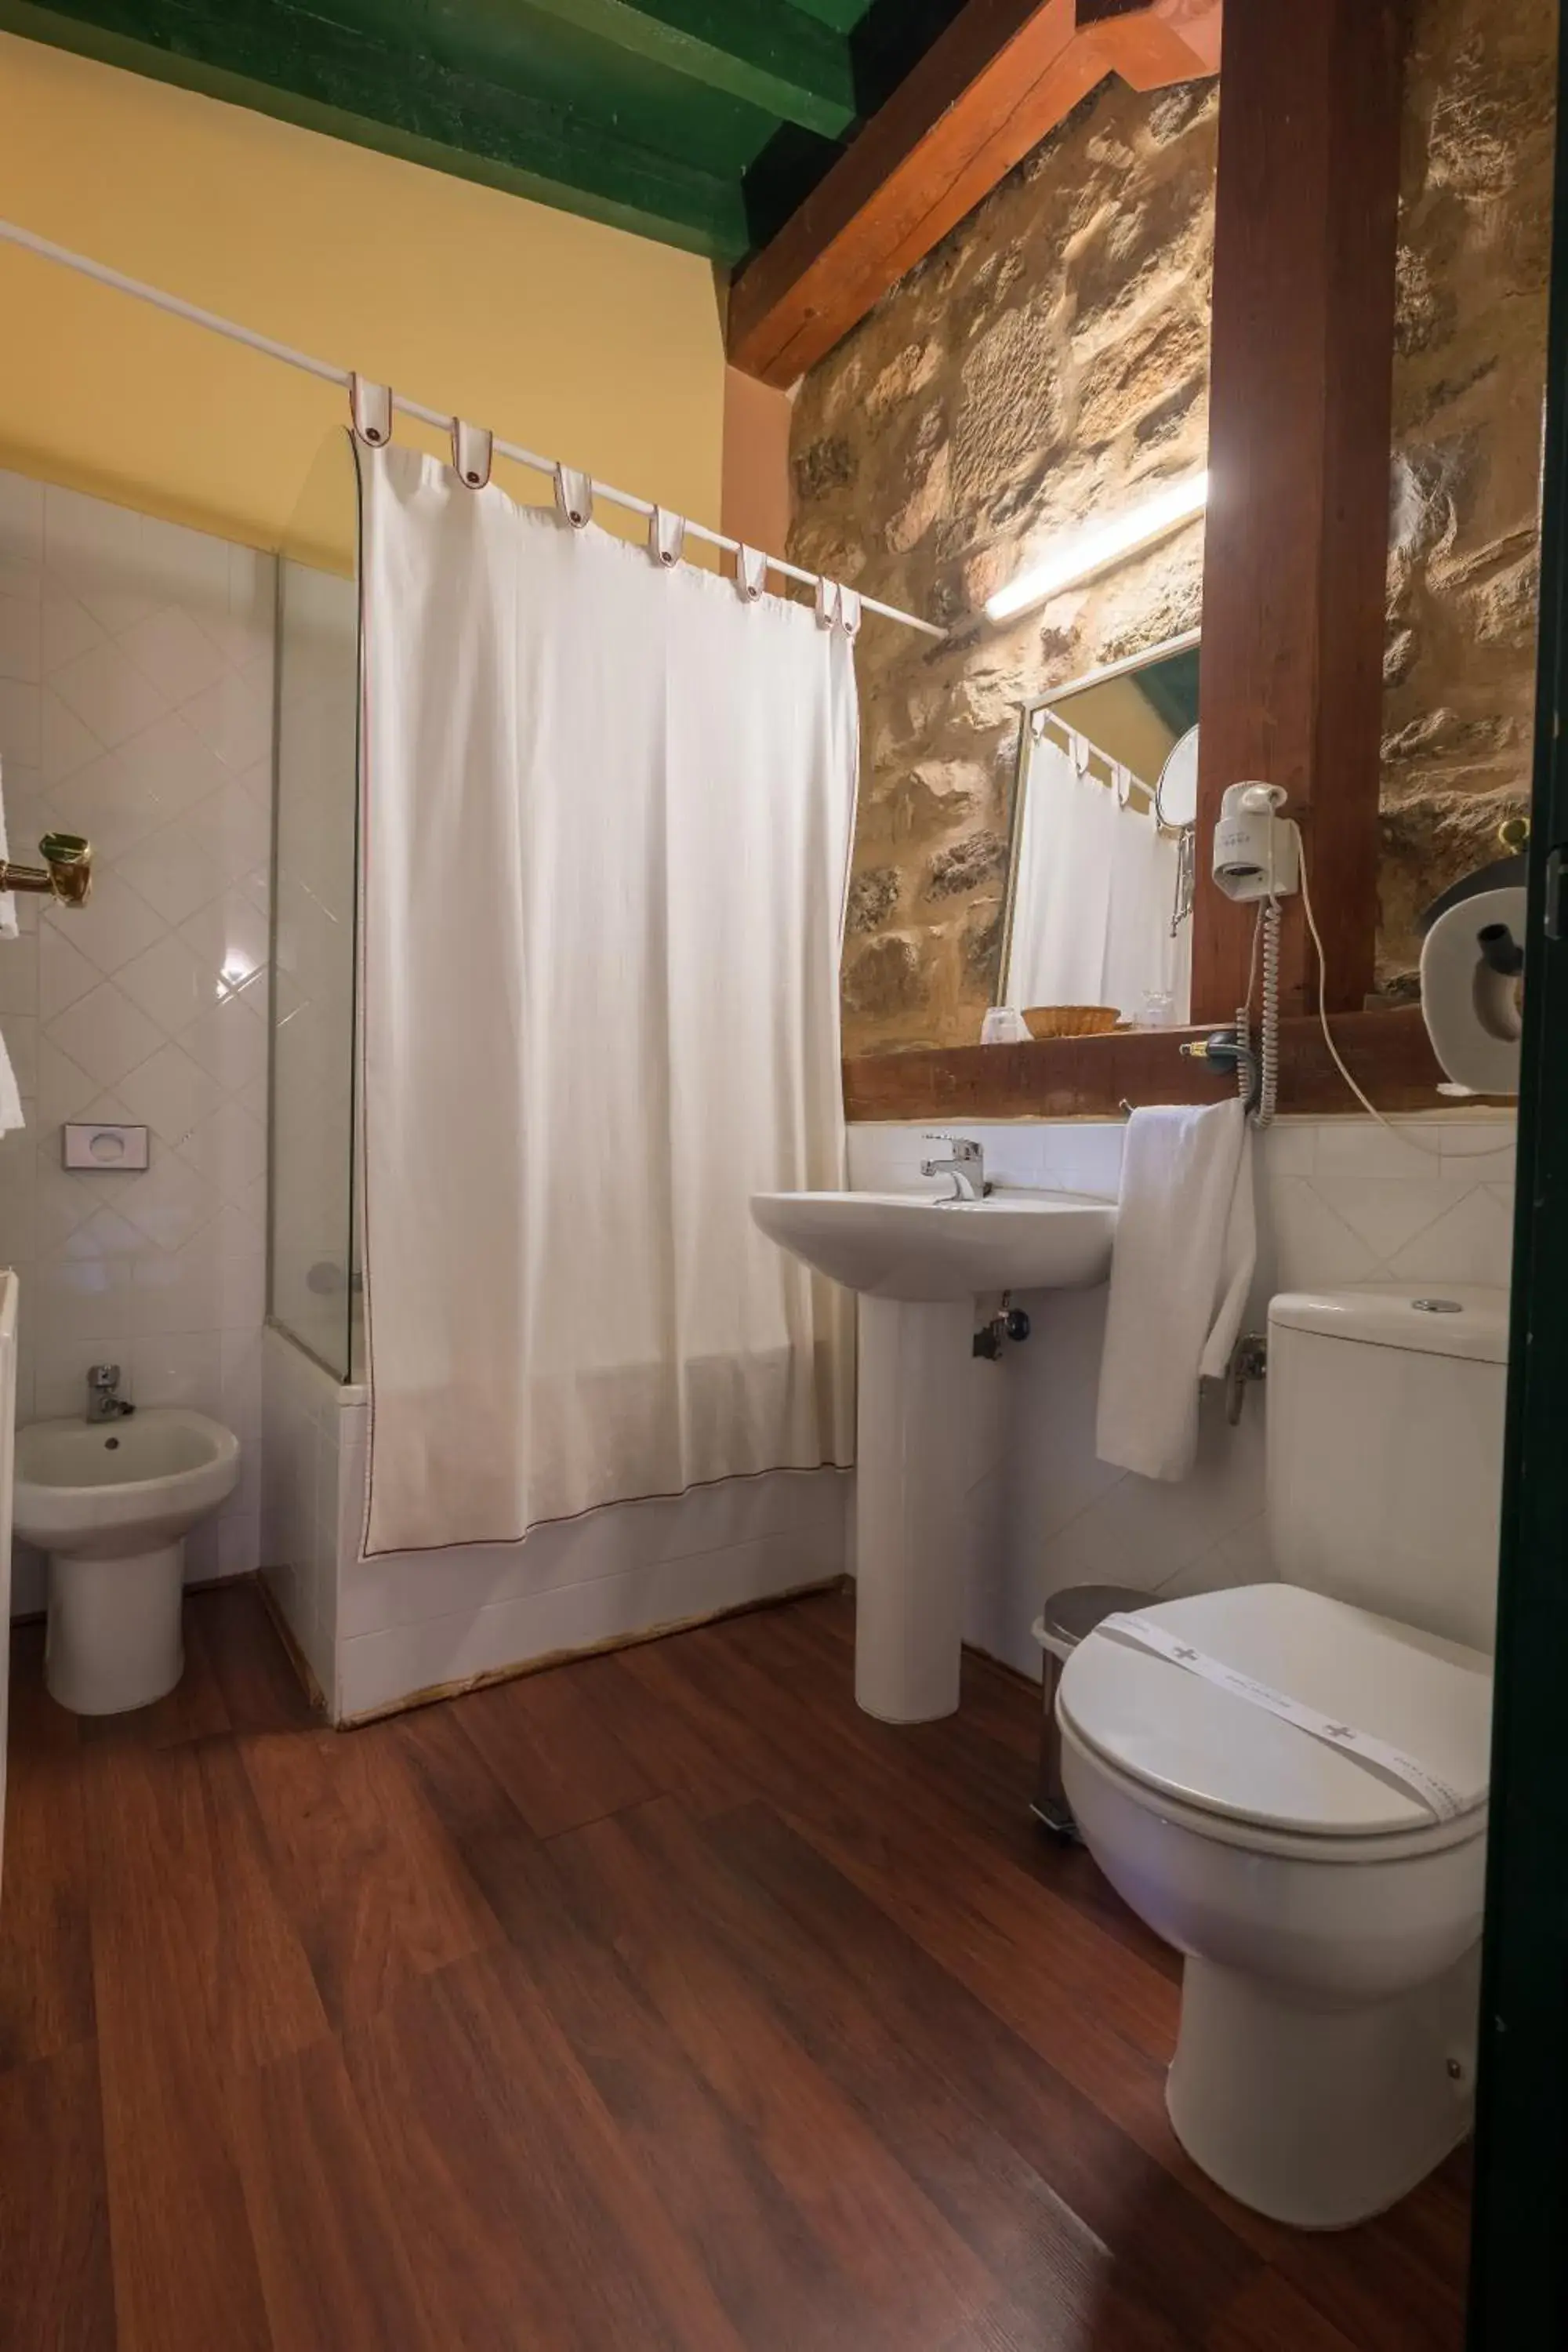 Bathroom in Hotel Posada Santa Maria la Real